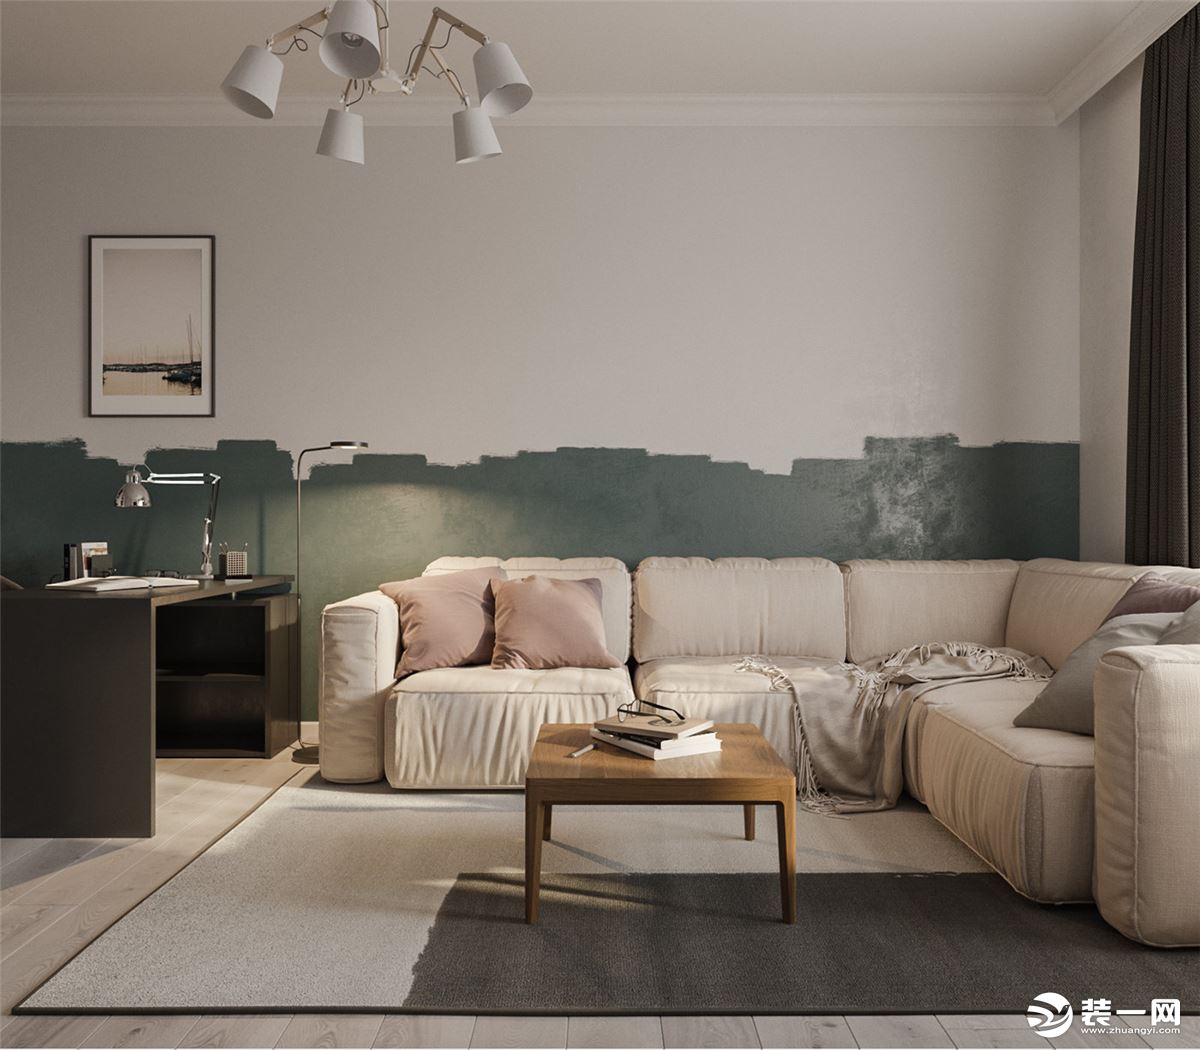 本案在配色与造型上非常的大胆，客厅沙发背景墙用两种颜色区别开来，高低起伏的造型非常有新鲜感，看似随意